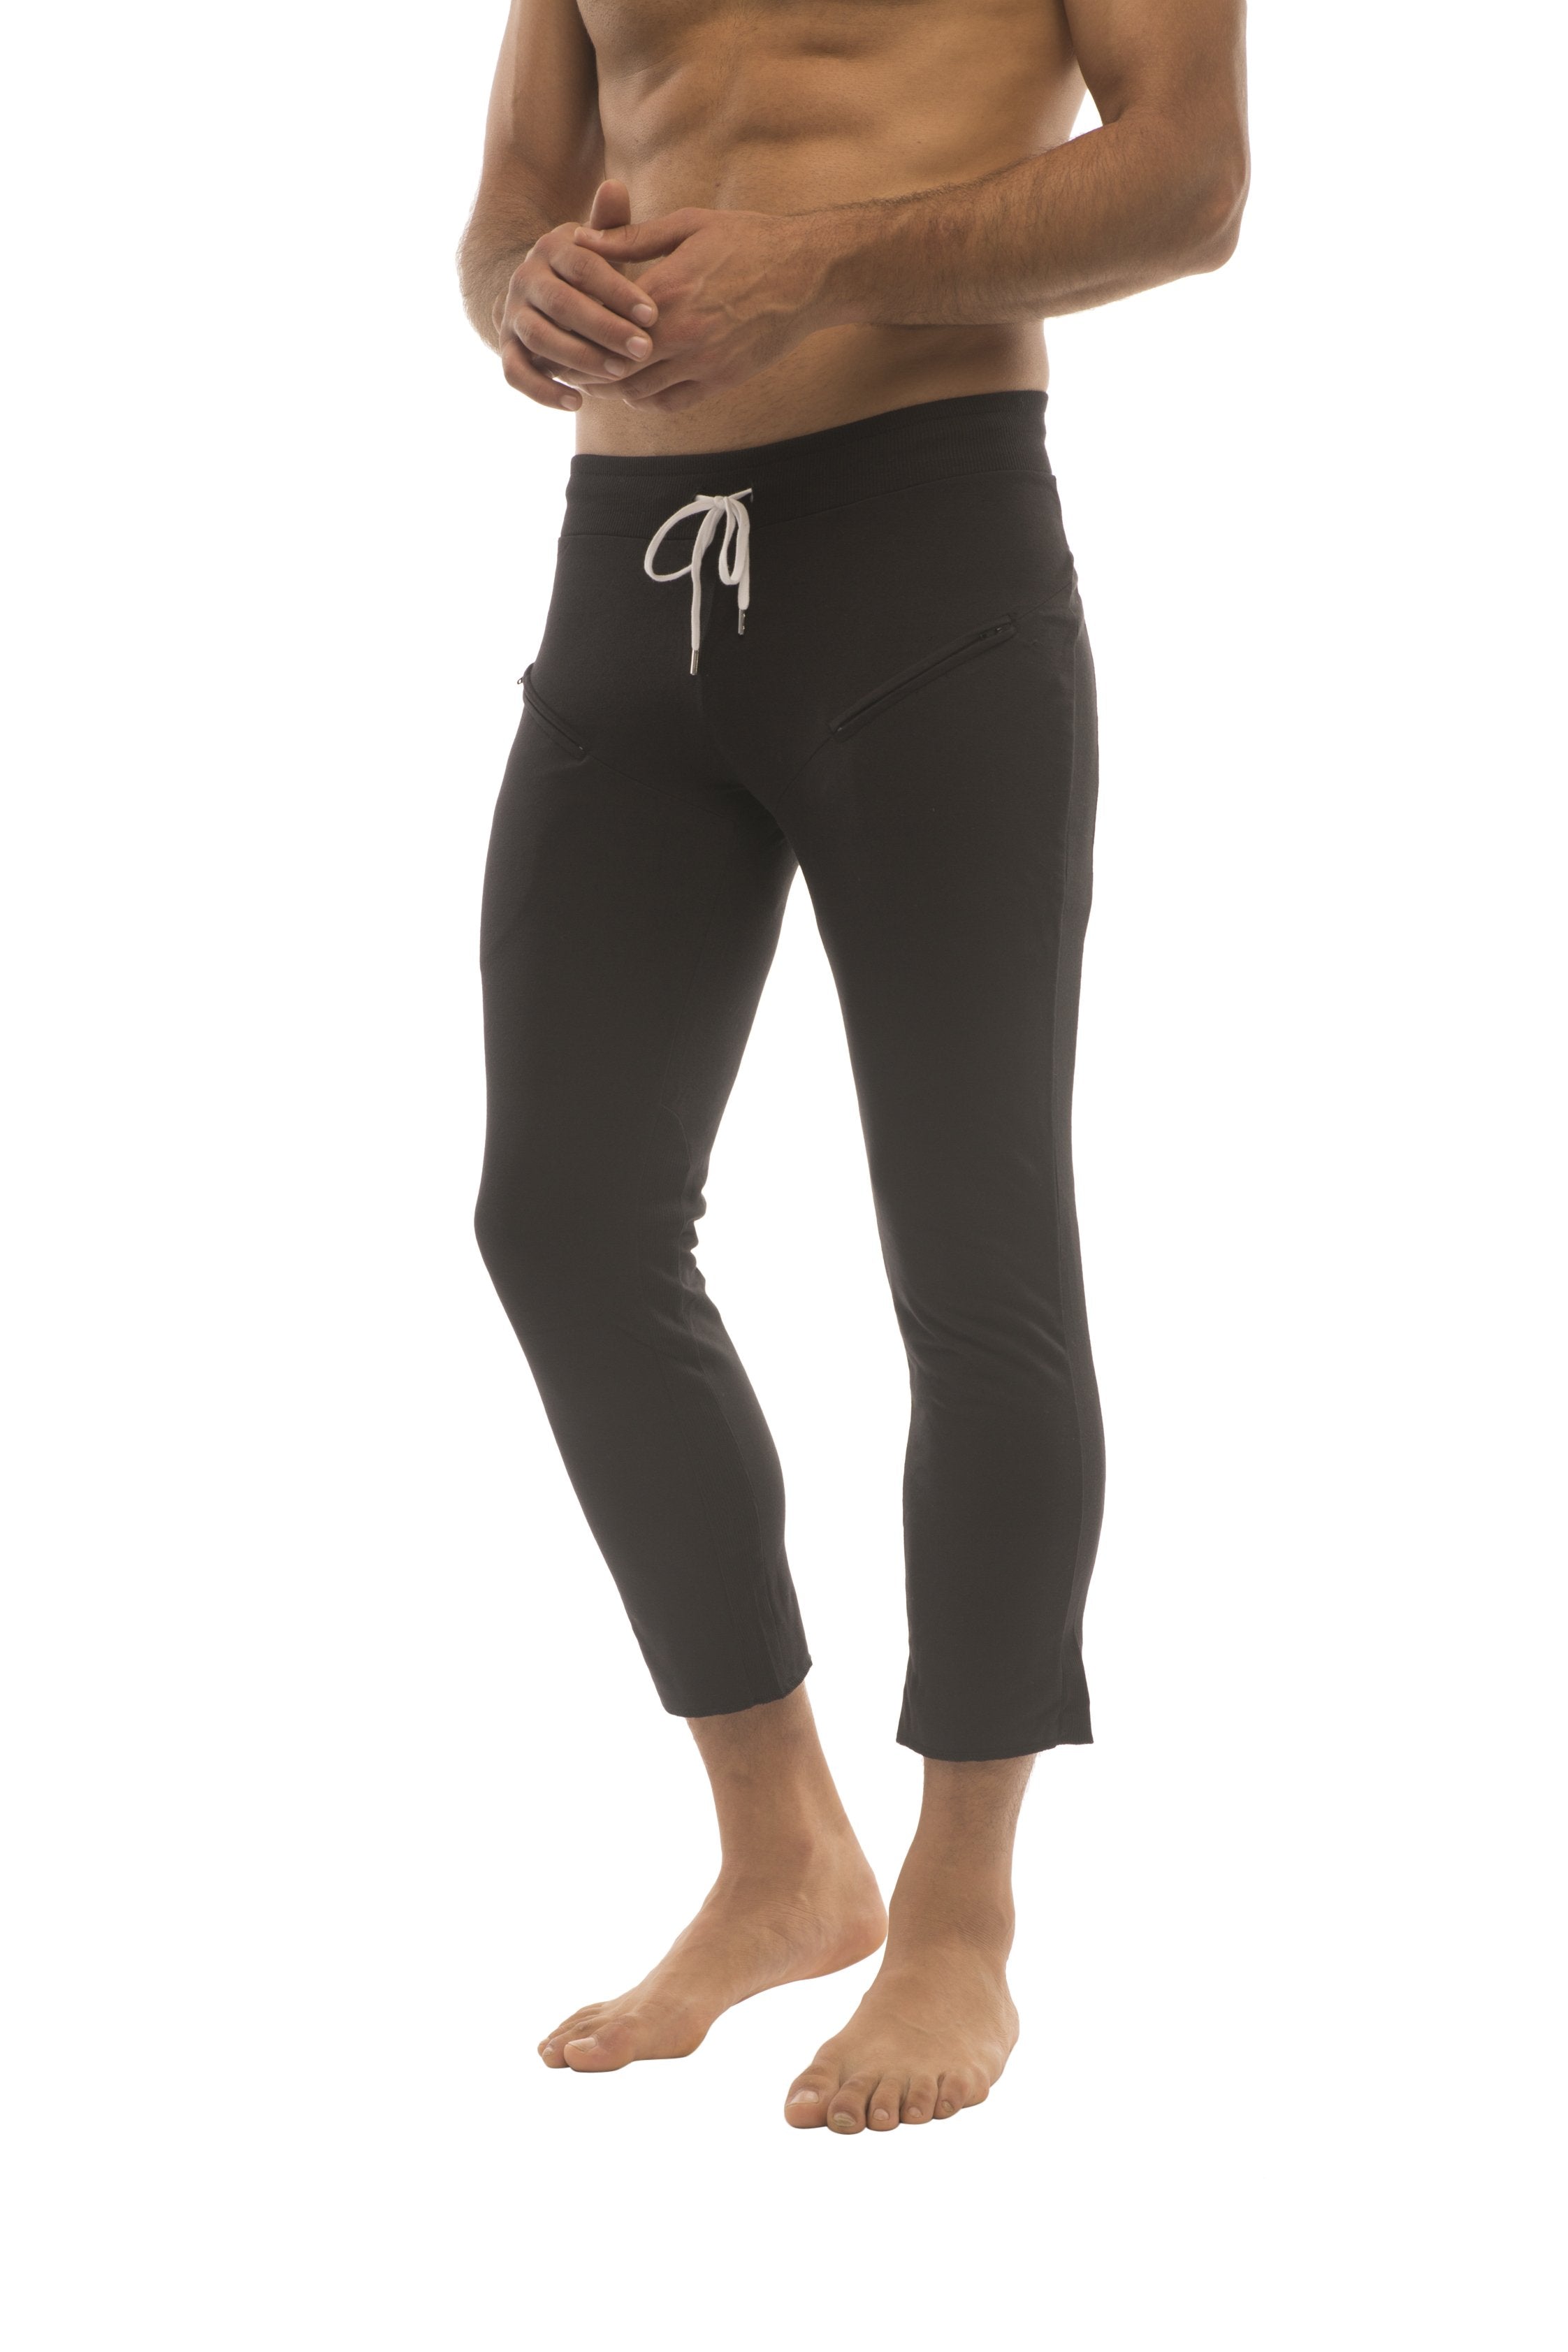 black capri yoga pants